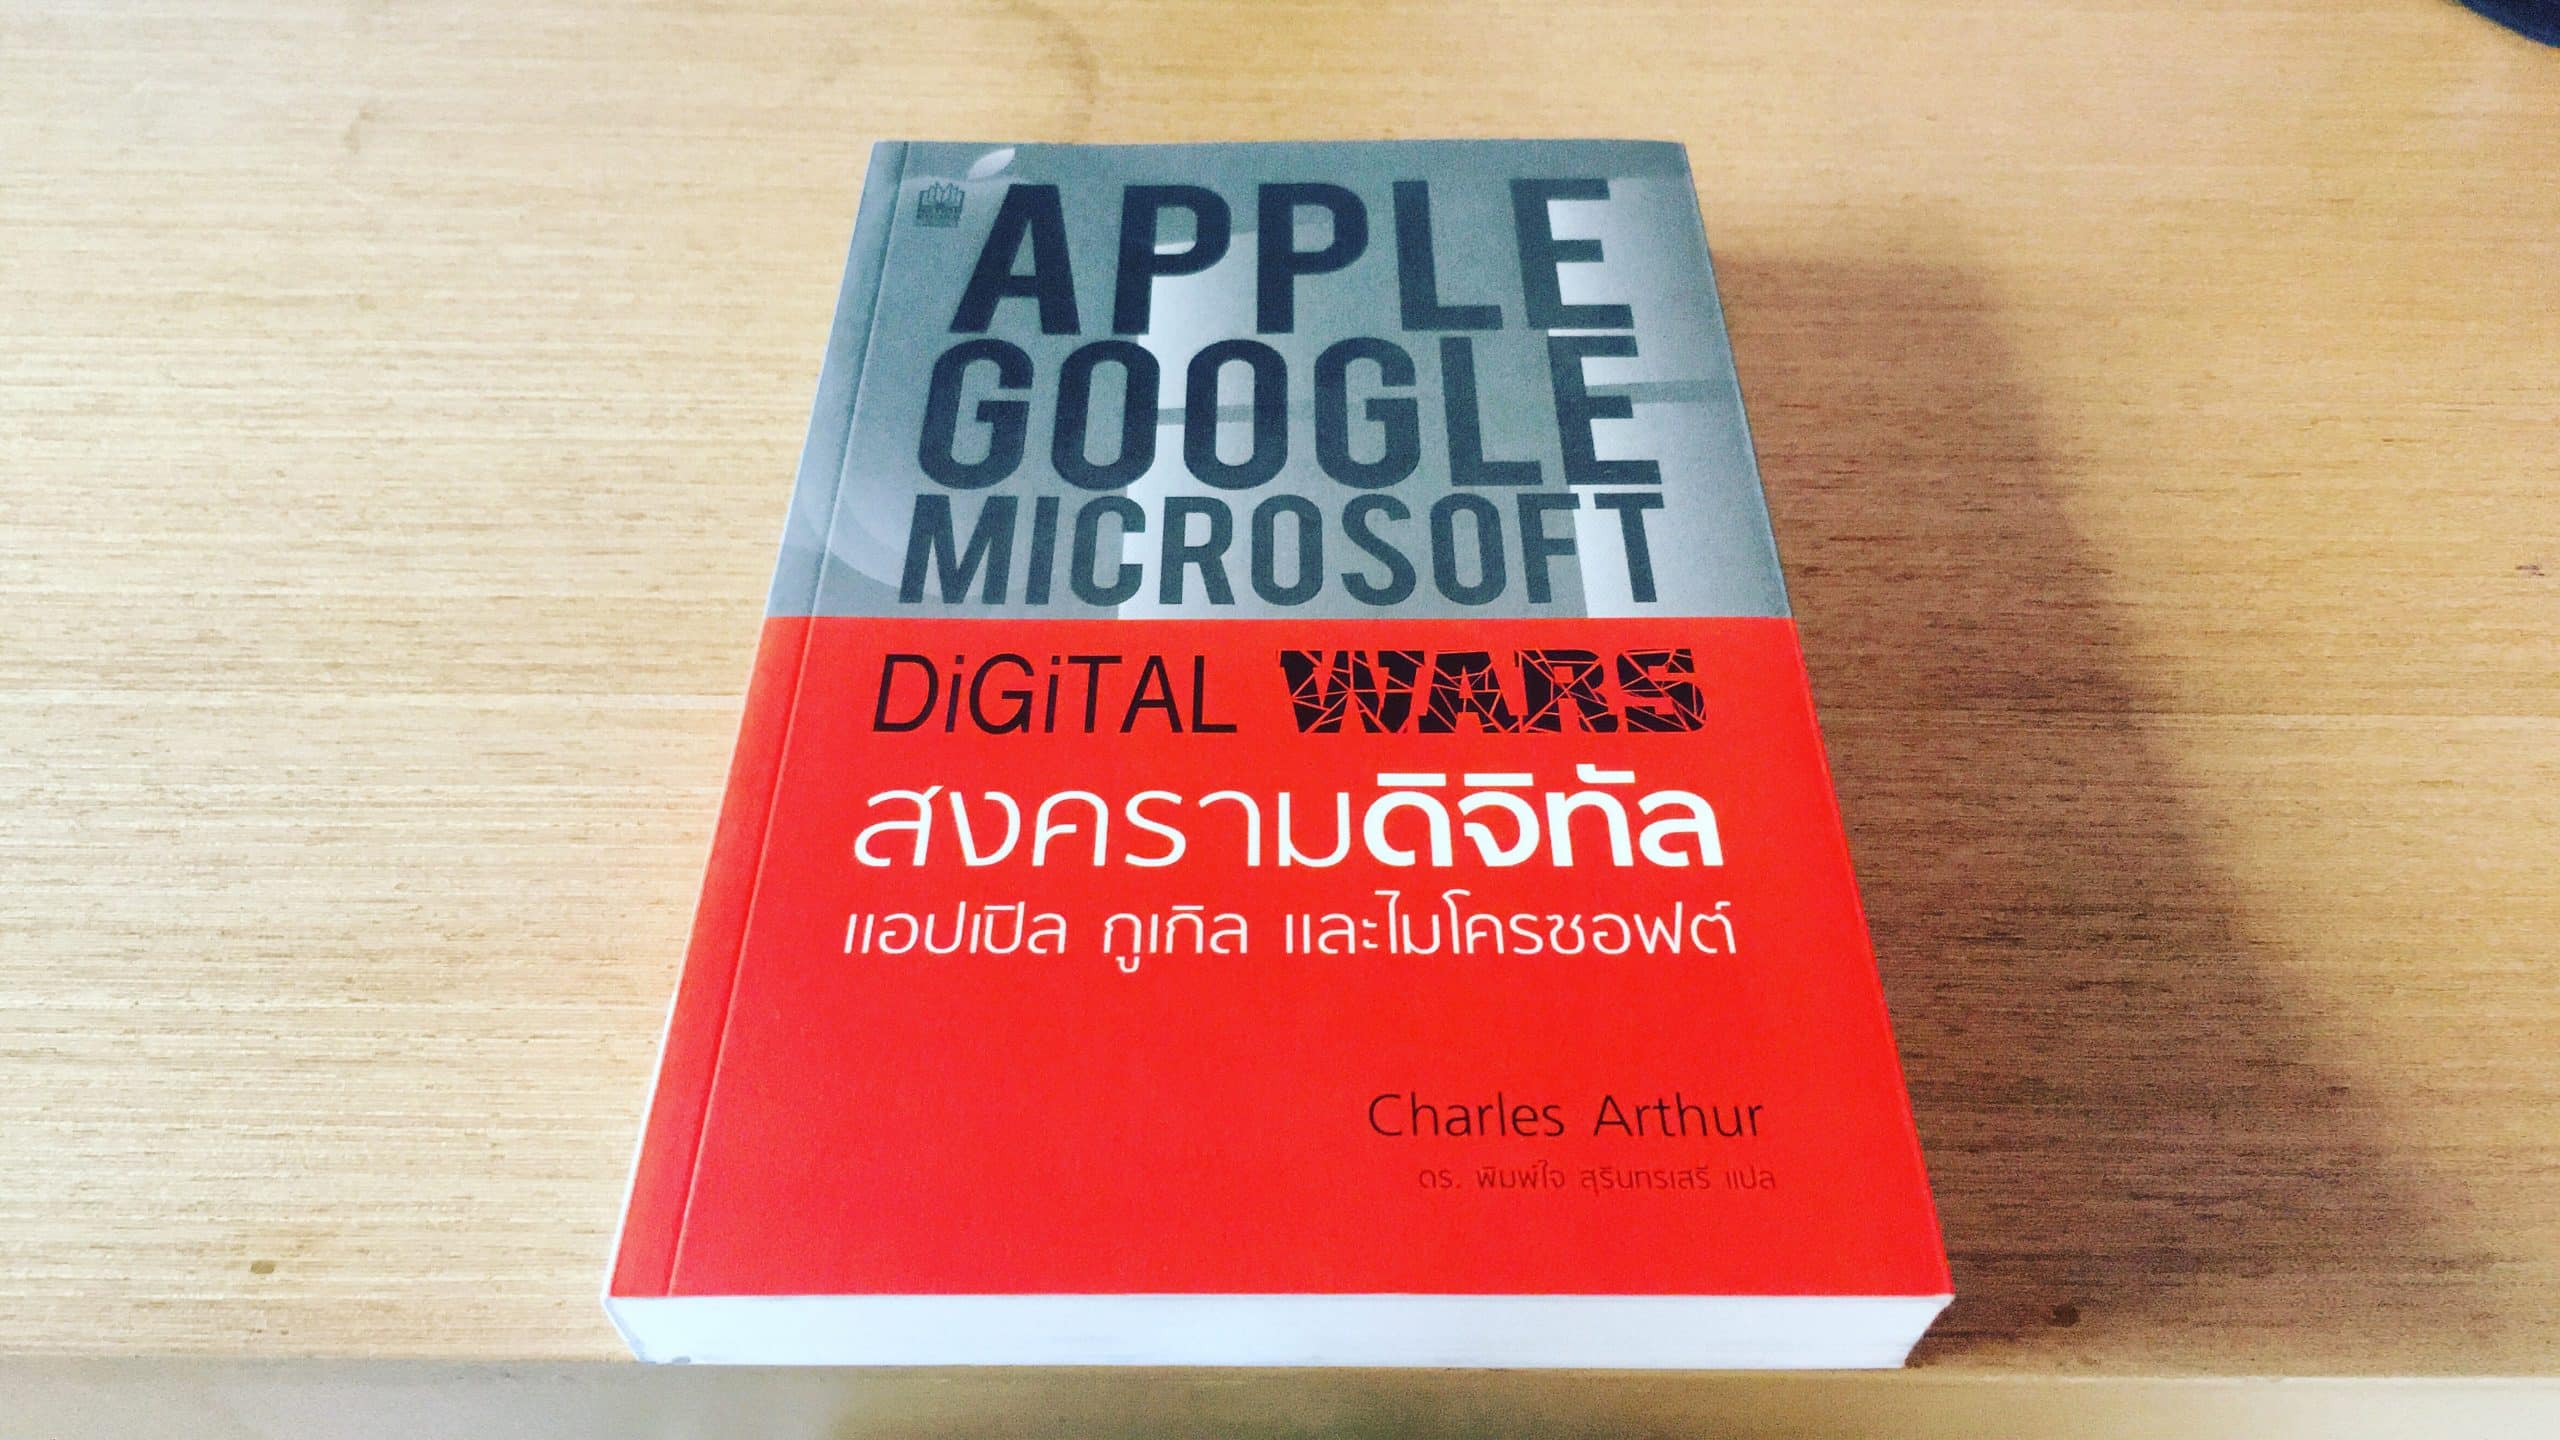 Digital Wars สงครามดิจิทัล แอปเปิล กูเกิล และไมโครซอฟต์